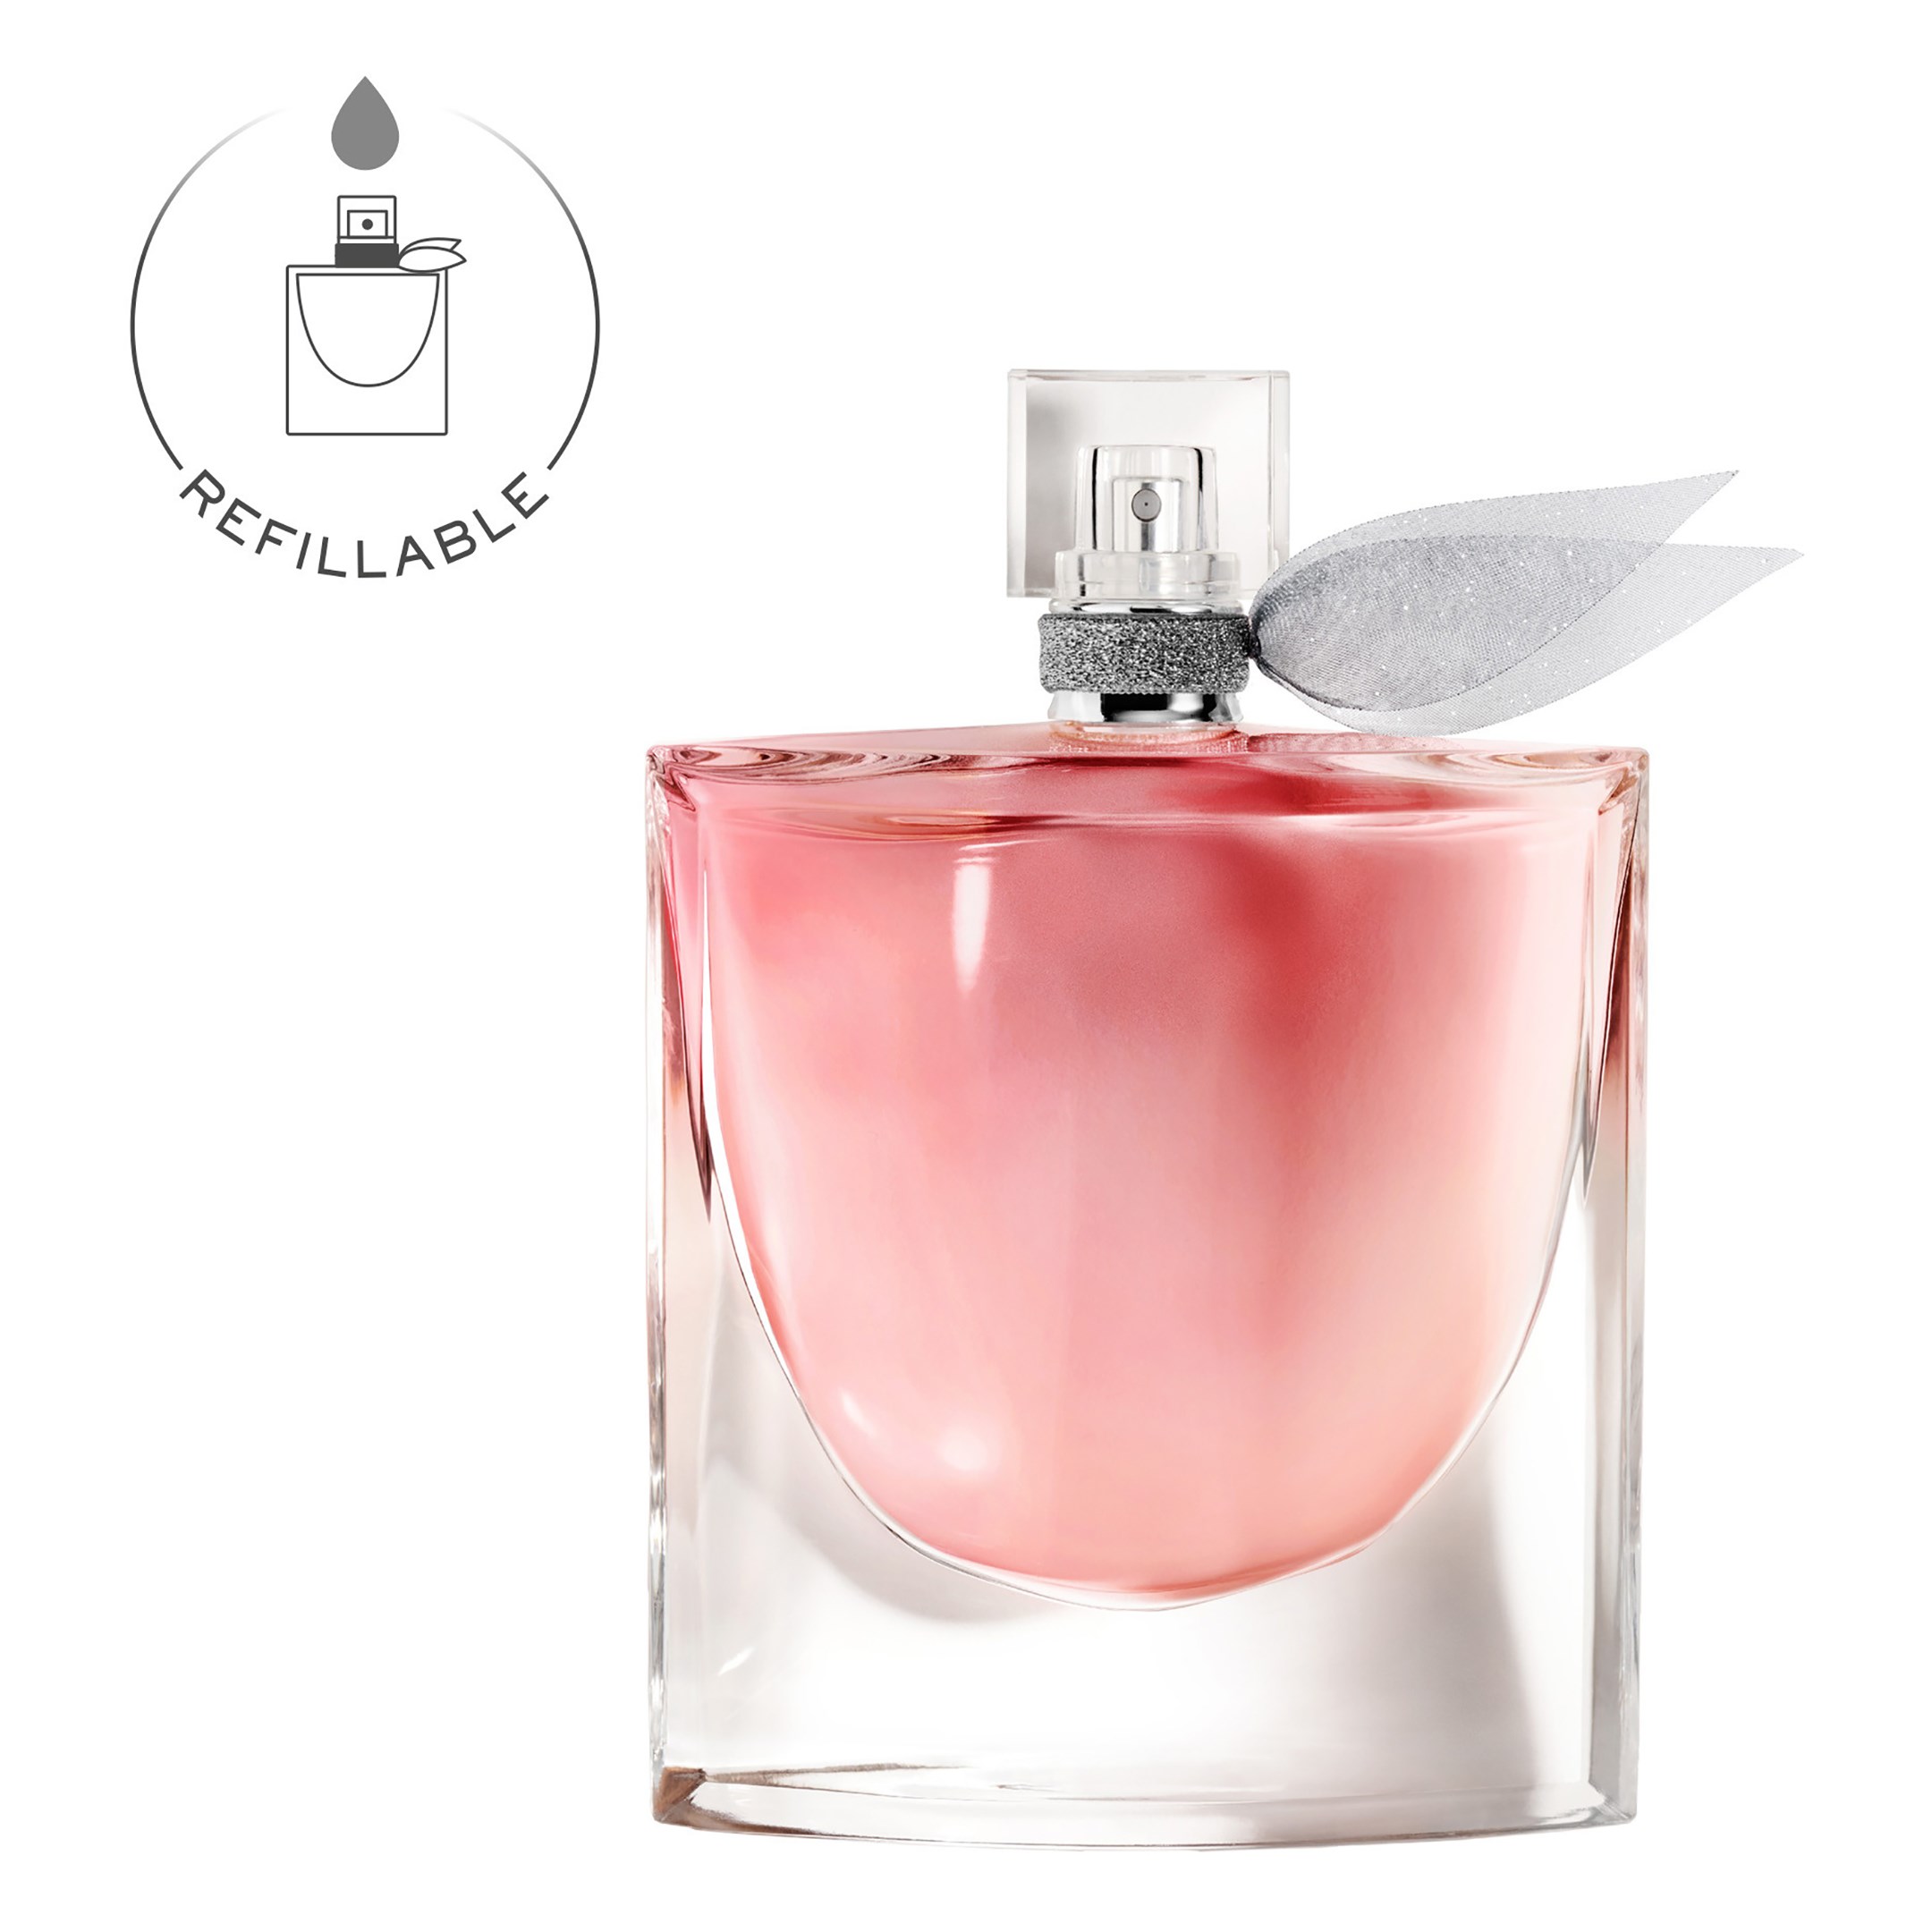 Lancôme La Vie est Belle Eau de Parfum 150 ml